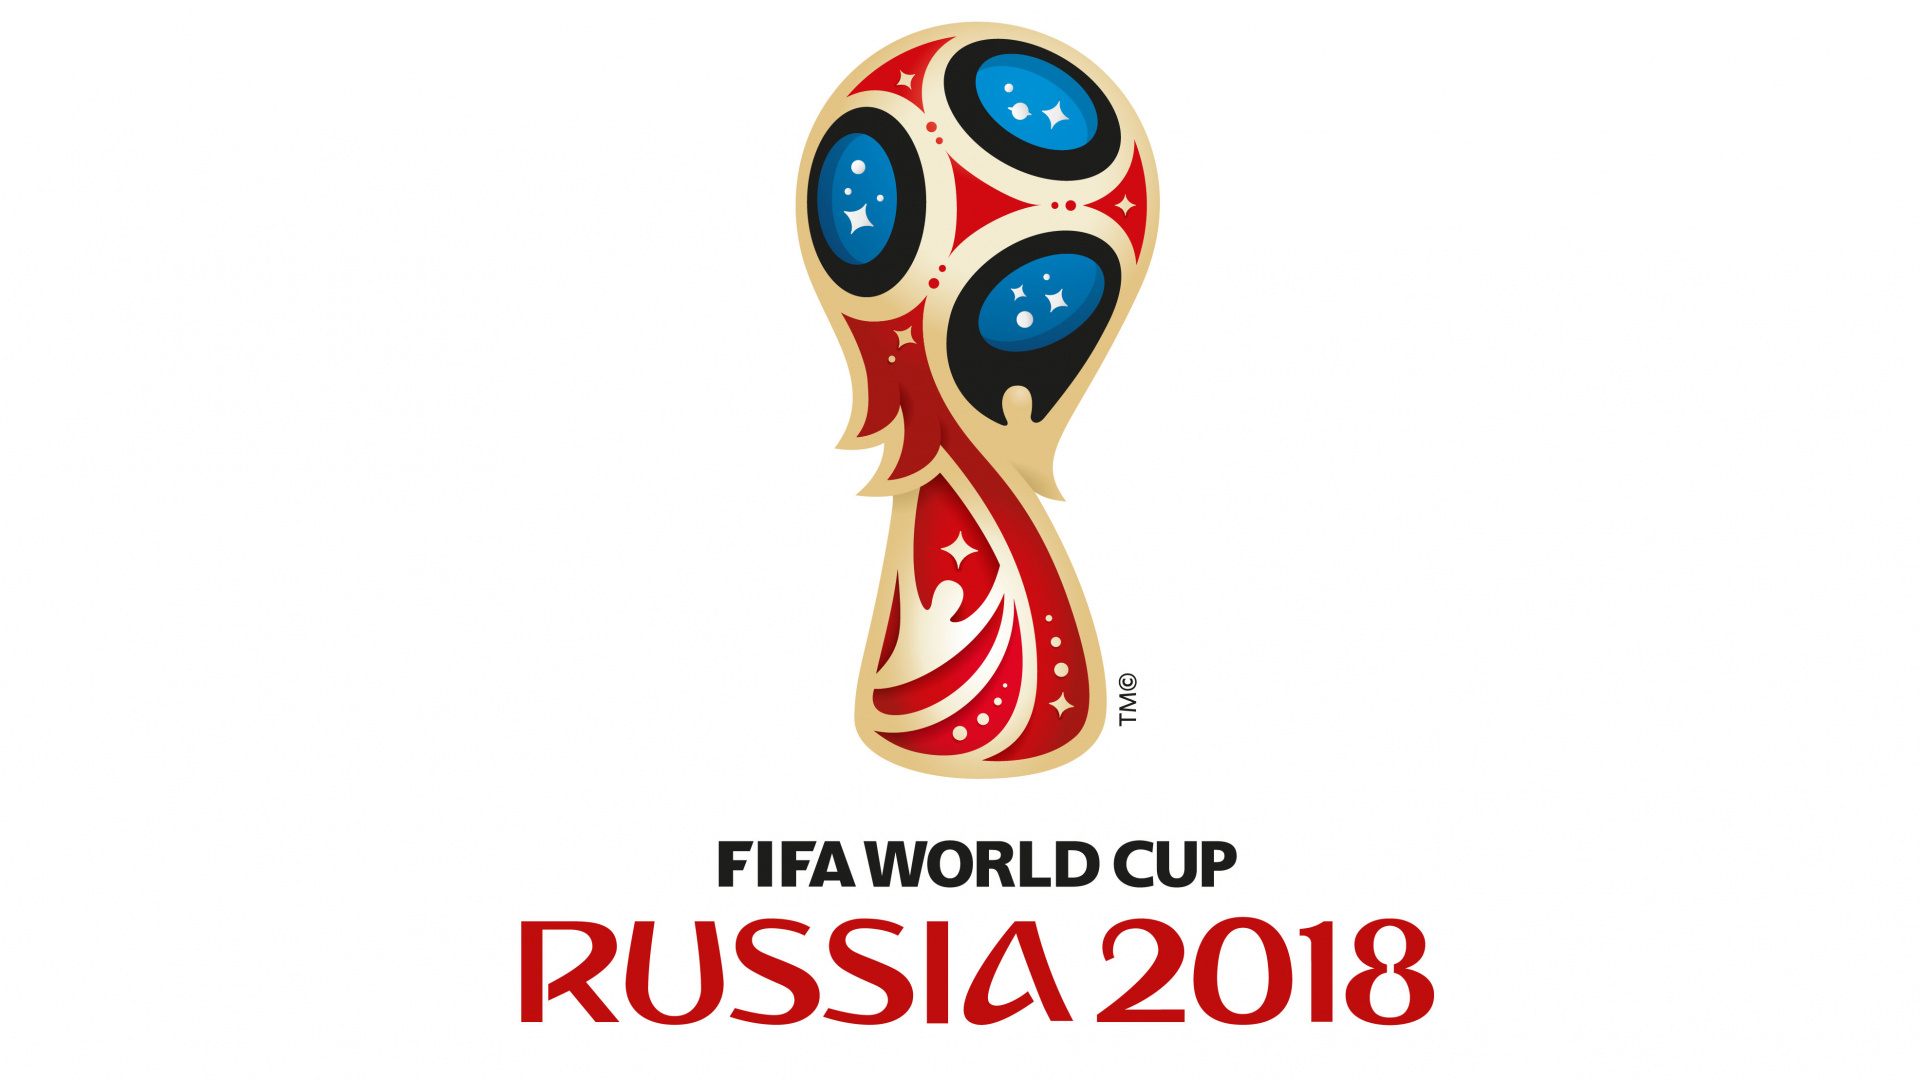 2018年世界杯, 国际足联, 品牌, 俄罗斯 壁纸 1920x1080 允许